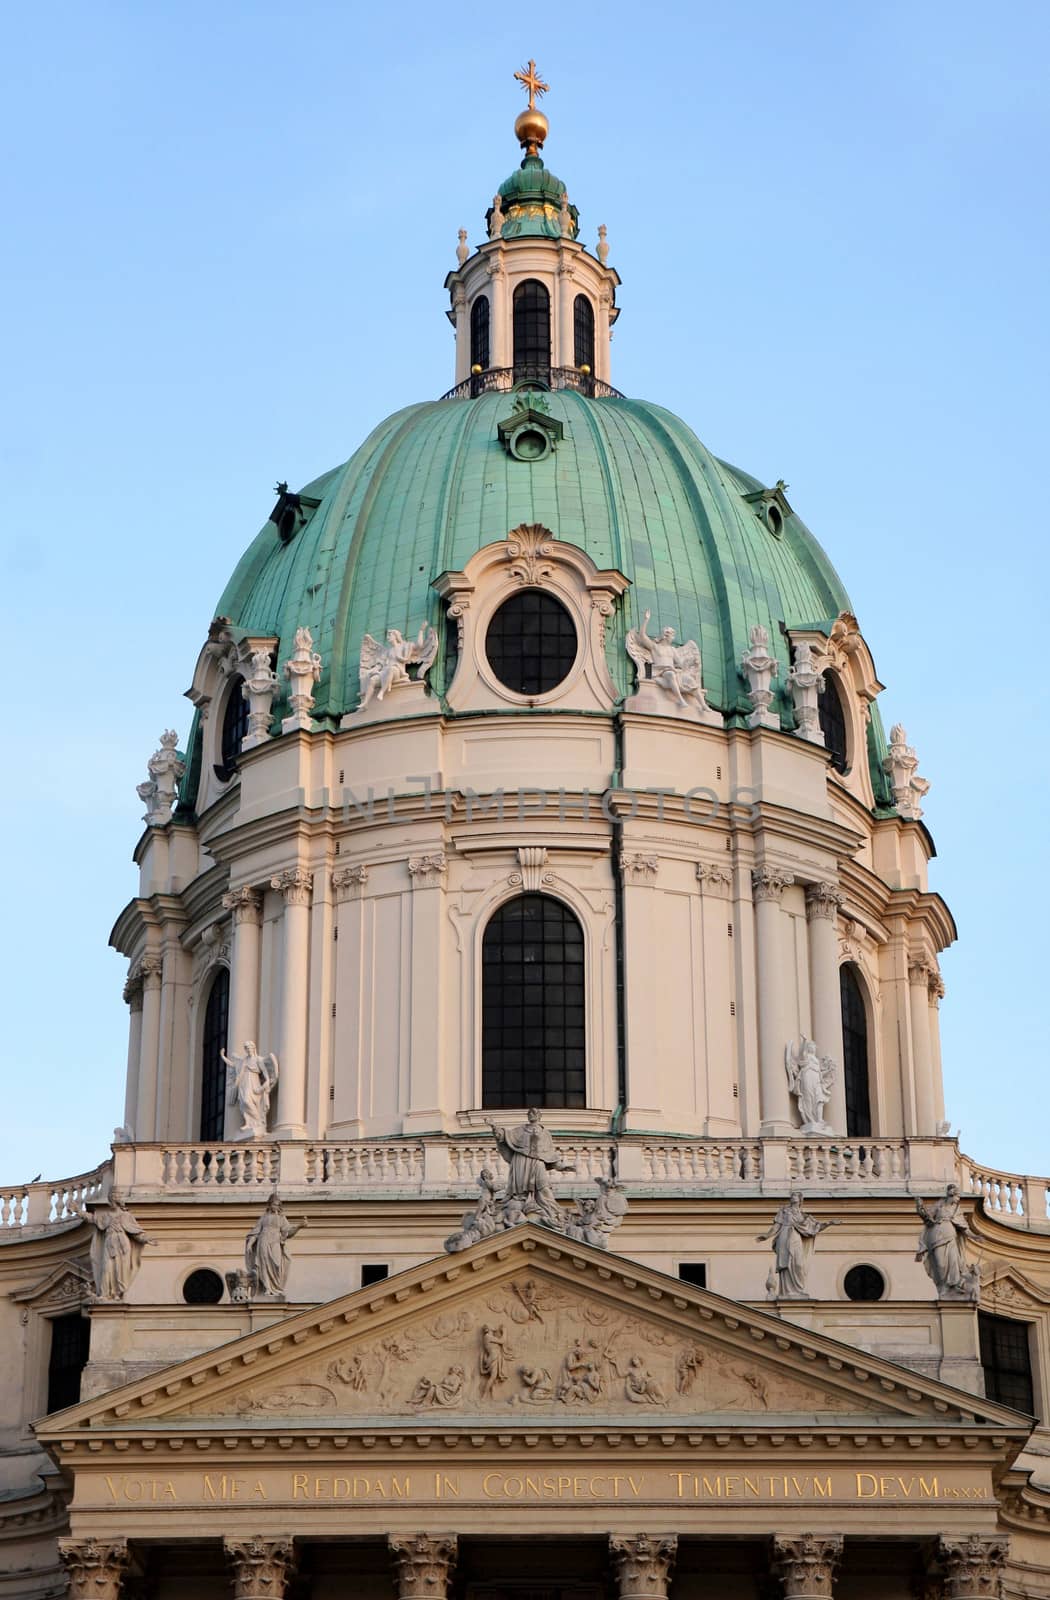 Karlskirche Church in Vienna, Austria by vladacanon